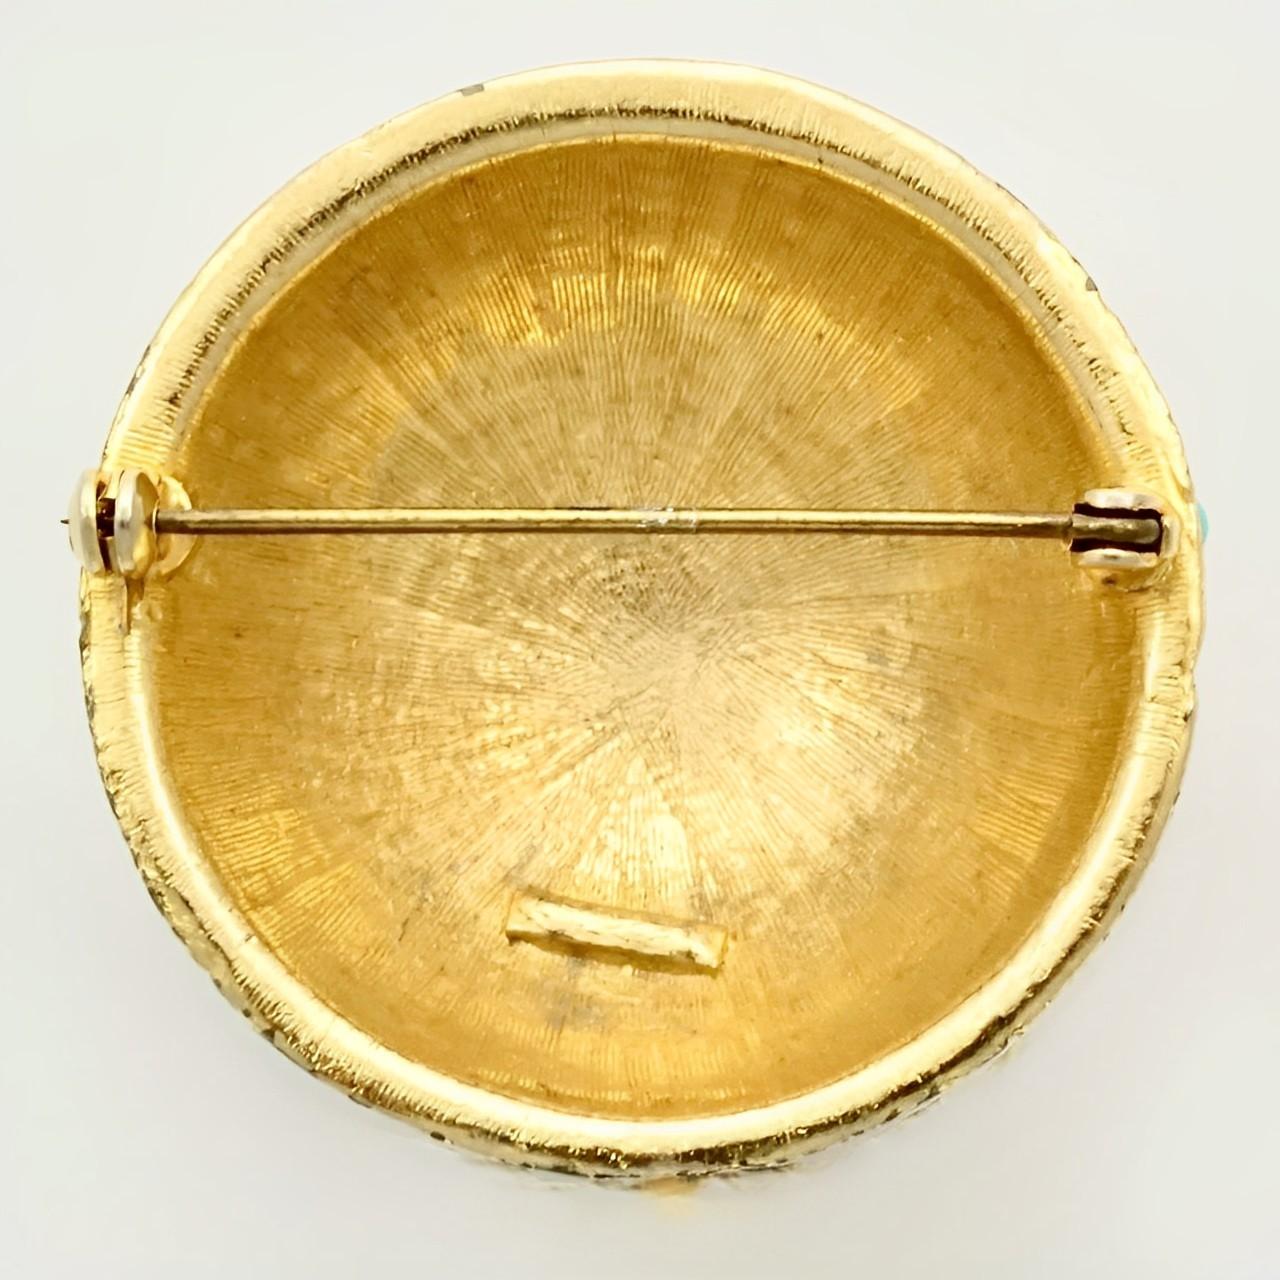 Wunderschöne, strukturierte, vergoldete Kuppelbrosche, besetzt mit türkisfarbenen Glassteinen. Messdurchmesser 4,15 cm / 1,6 Zoll. Die Vergoldung weist Gebrauchsspuren auf.

Dies ist eine ungewöhnliche Brosche aus den 1970er Jahren.